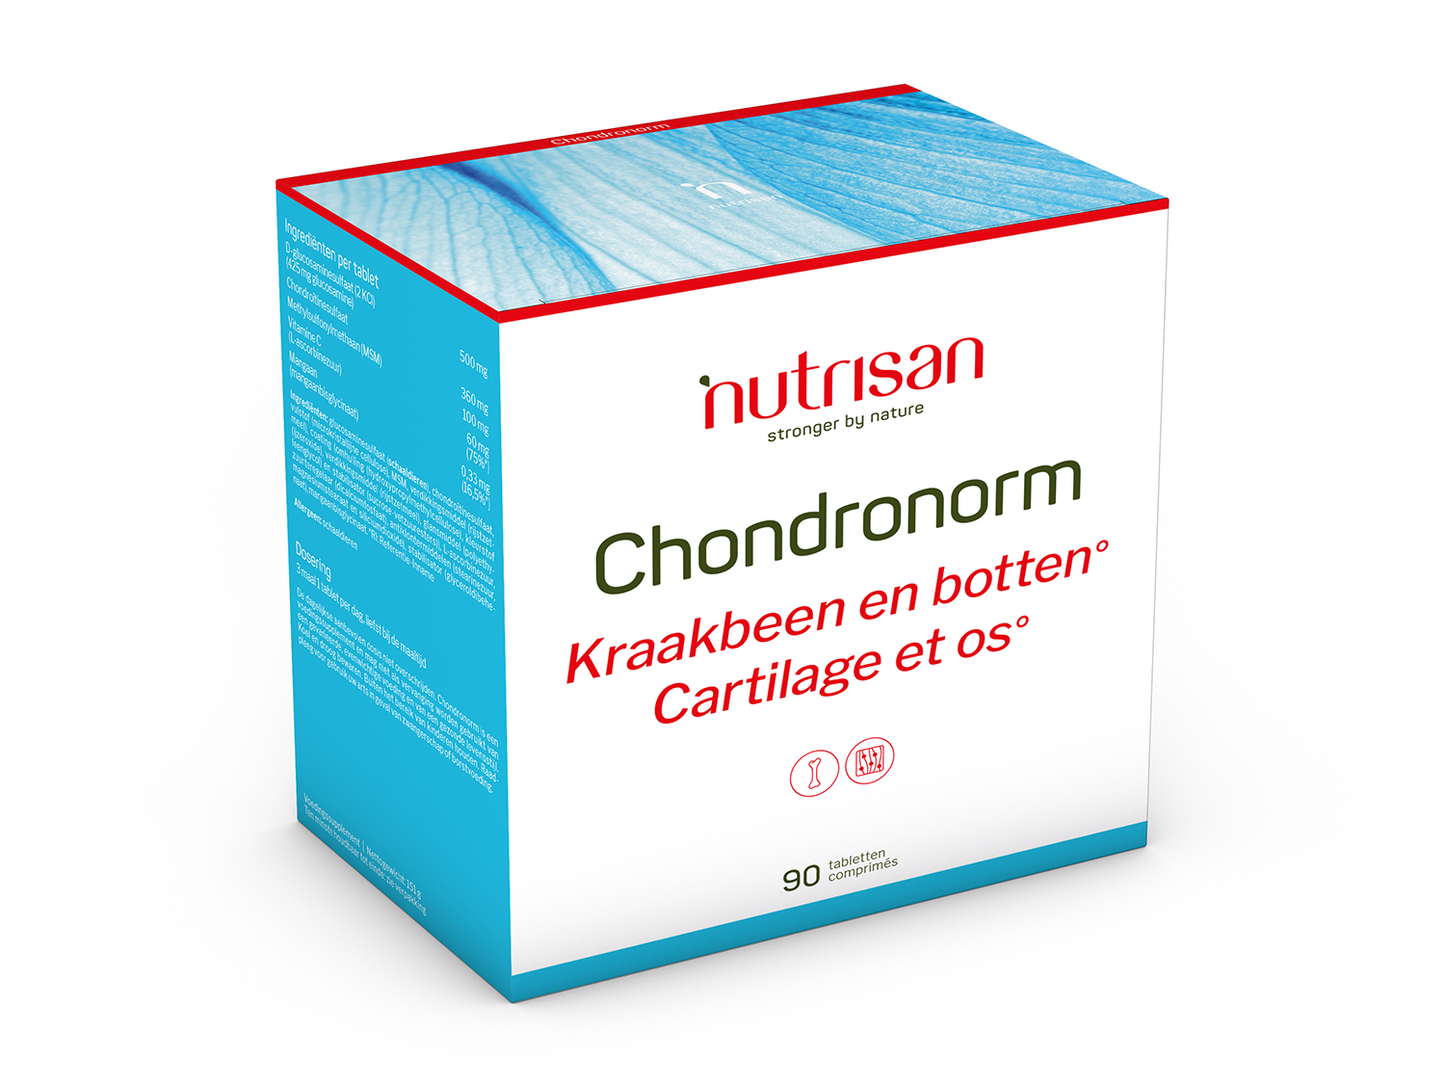 Nutrisan Chondronorm - Supplement voor kraakbeen en botten